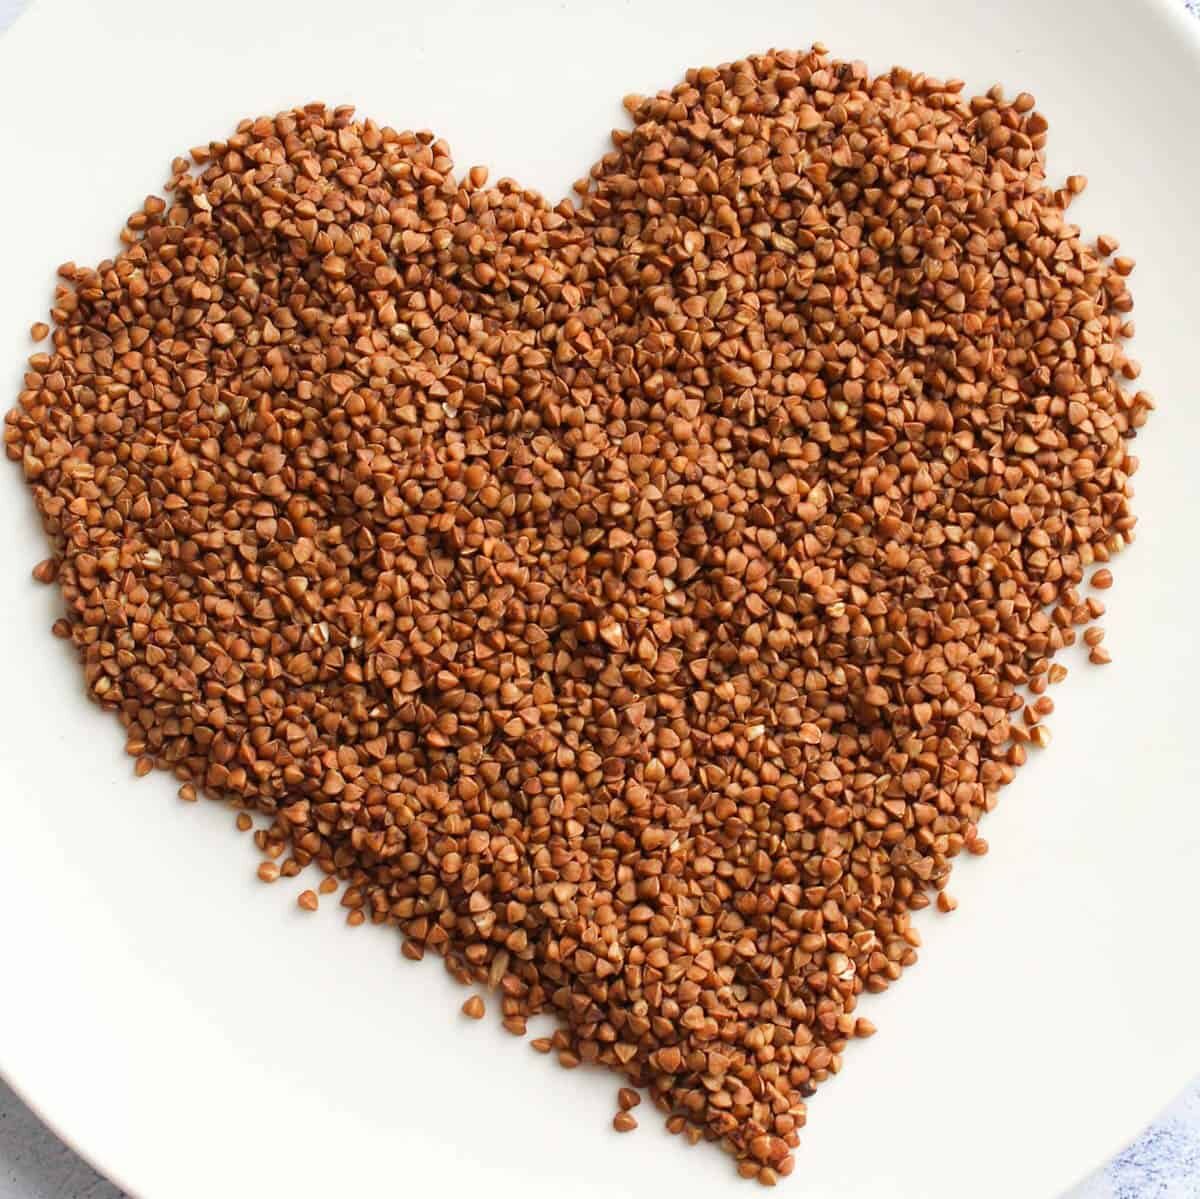 a heart made from buckwheat groats